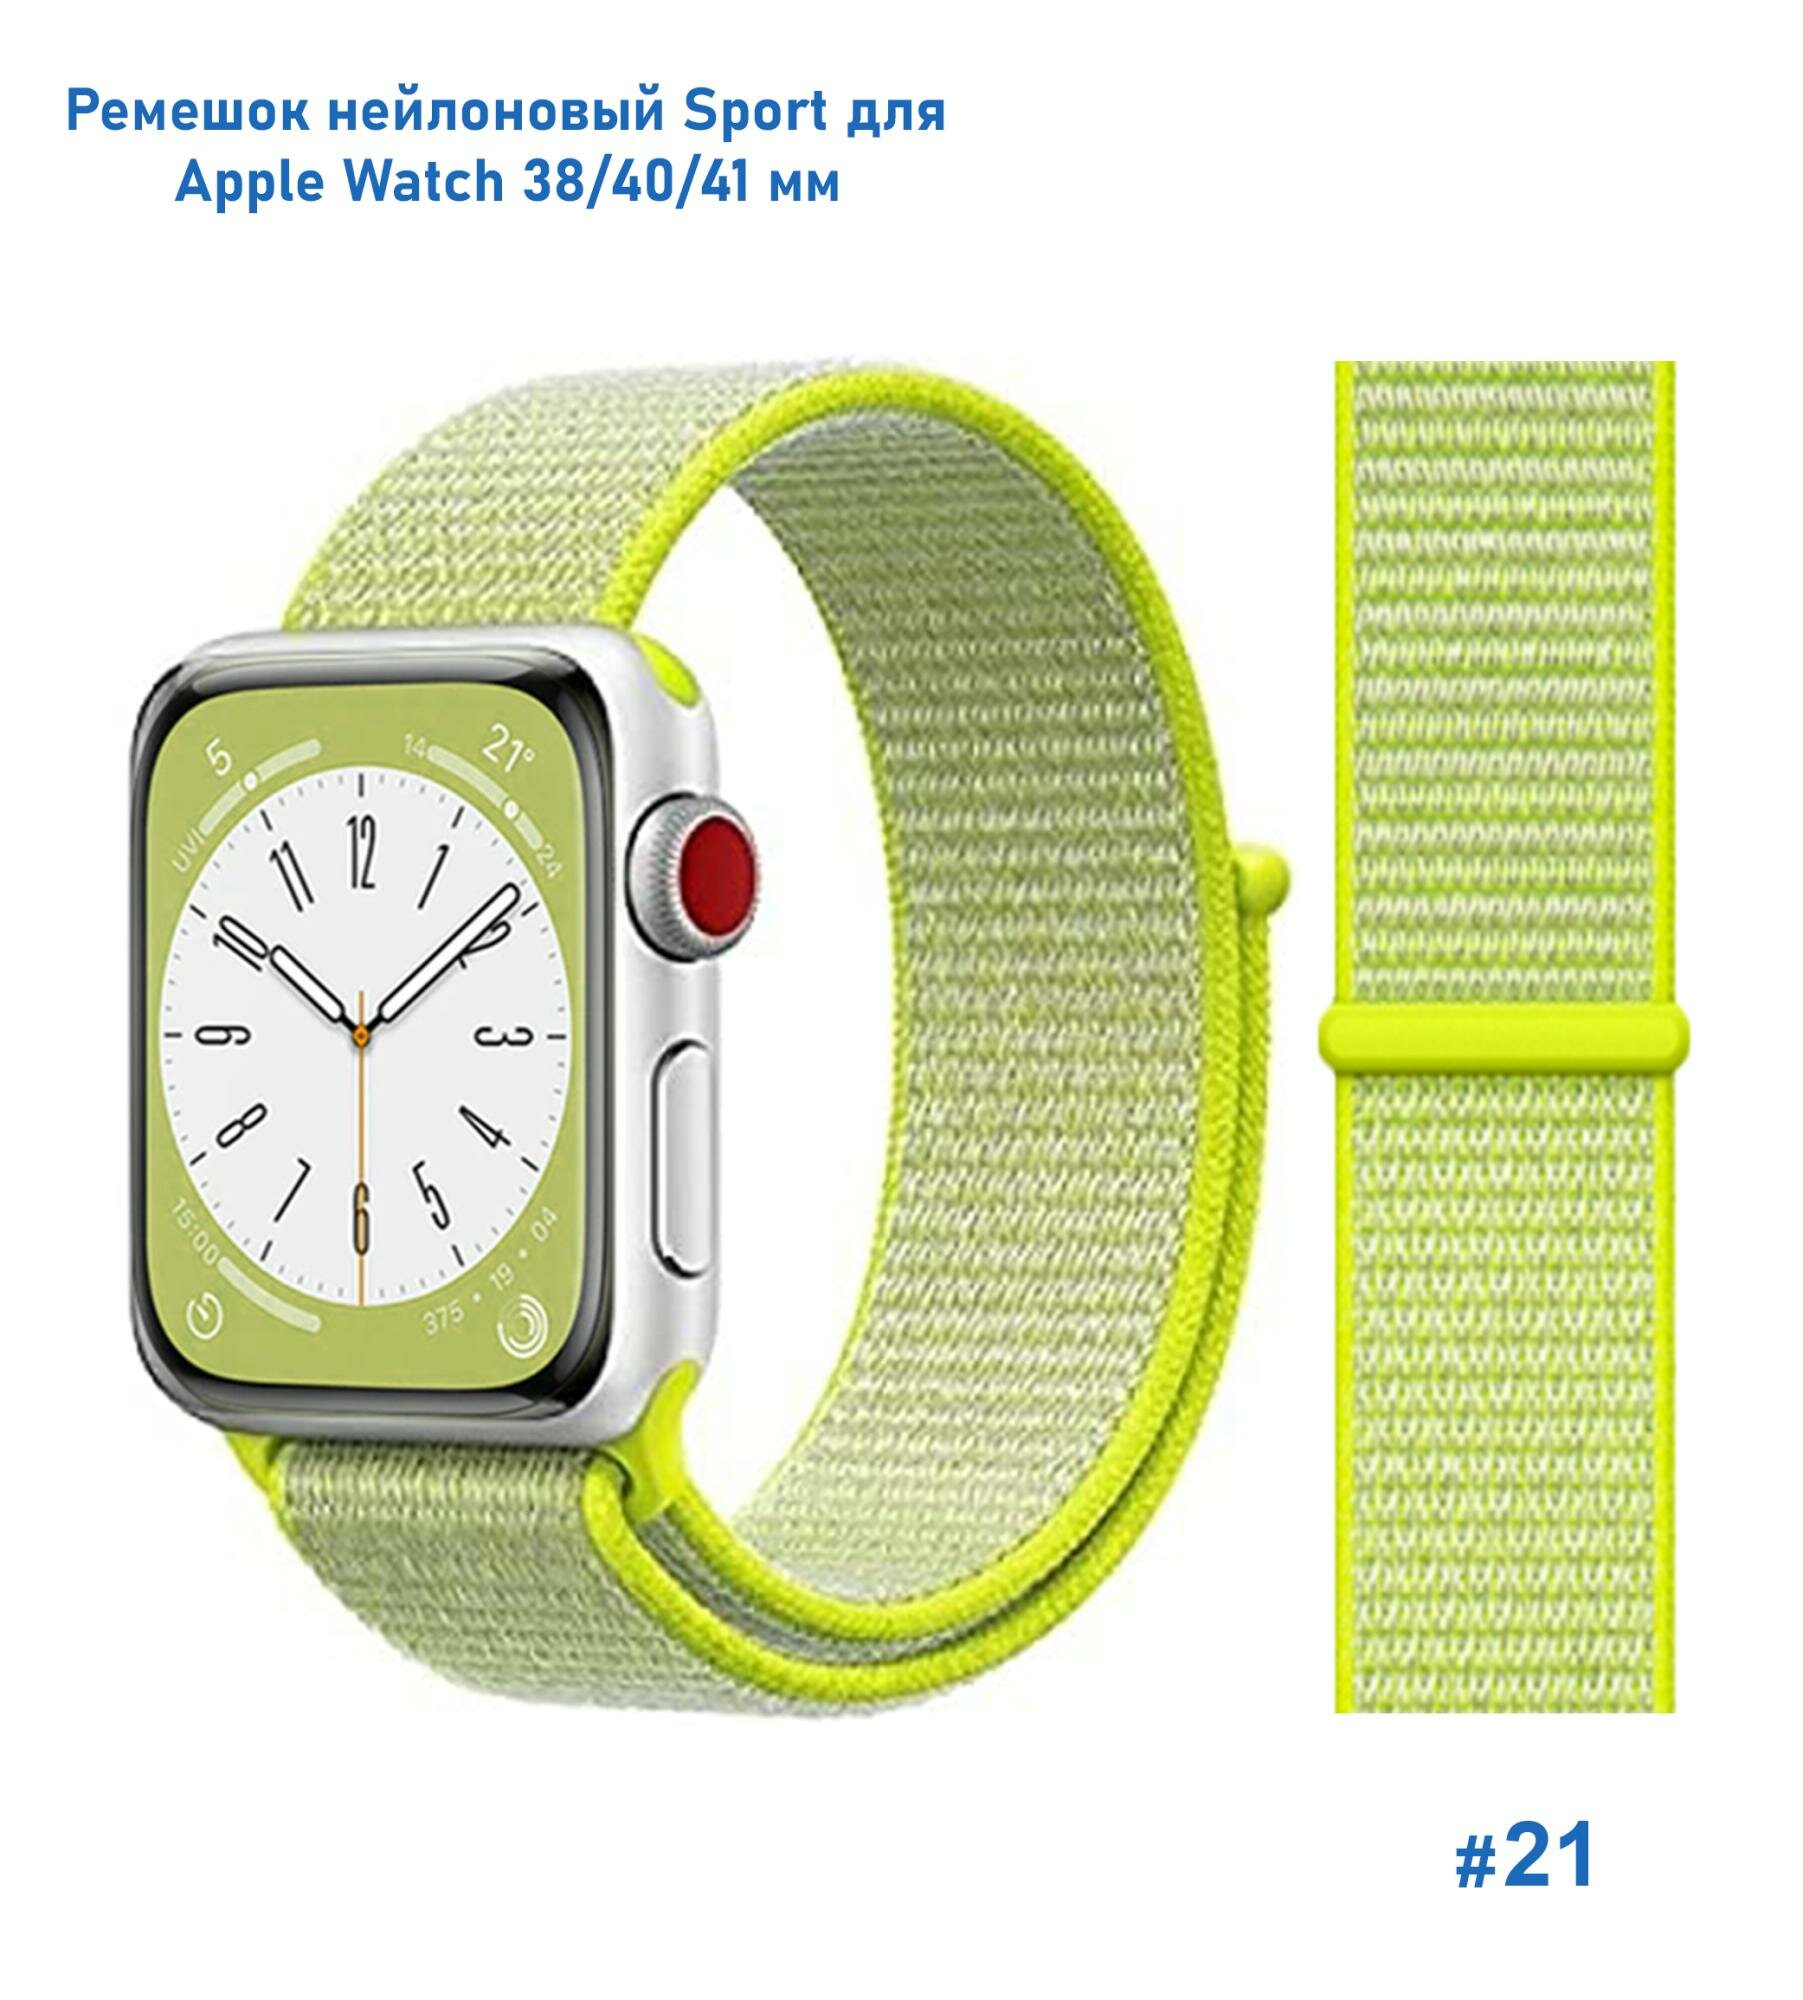 Ремешок нейлоновый для Apple Watch 38/40мм (17) нектариновый на липучке